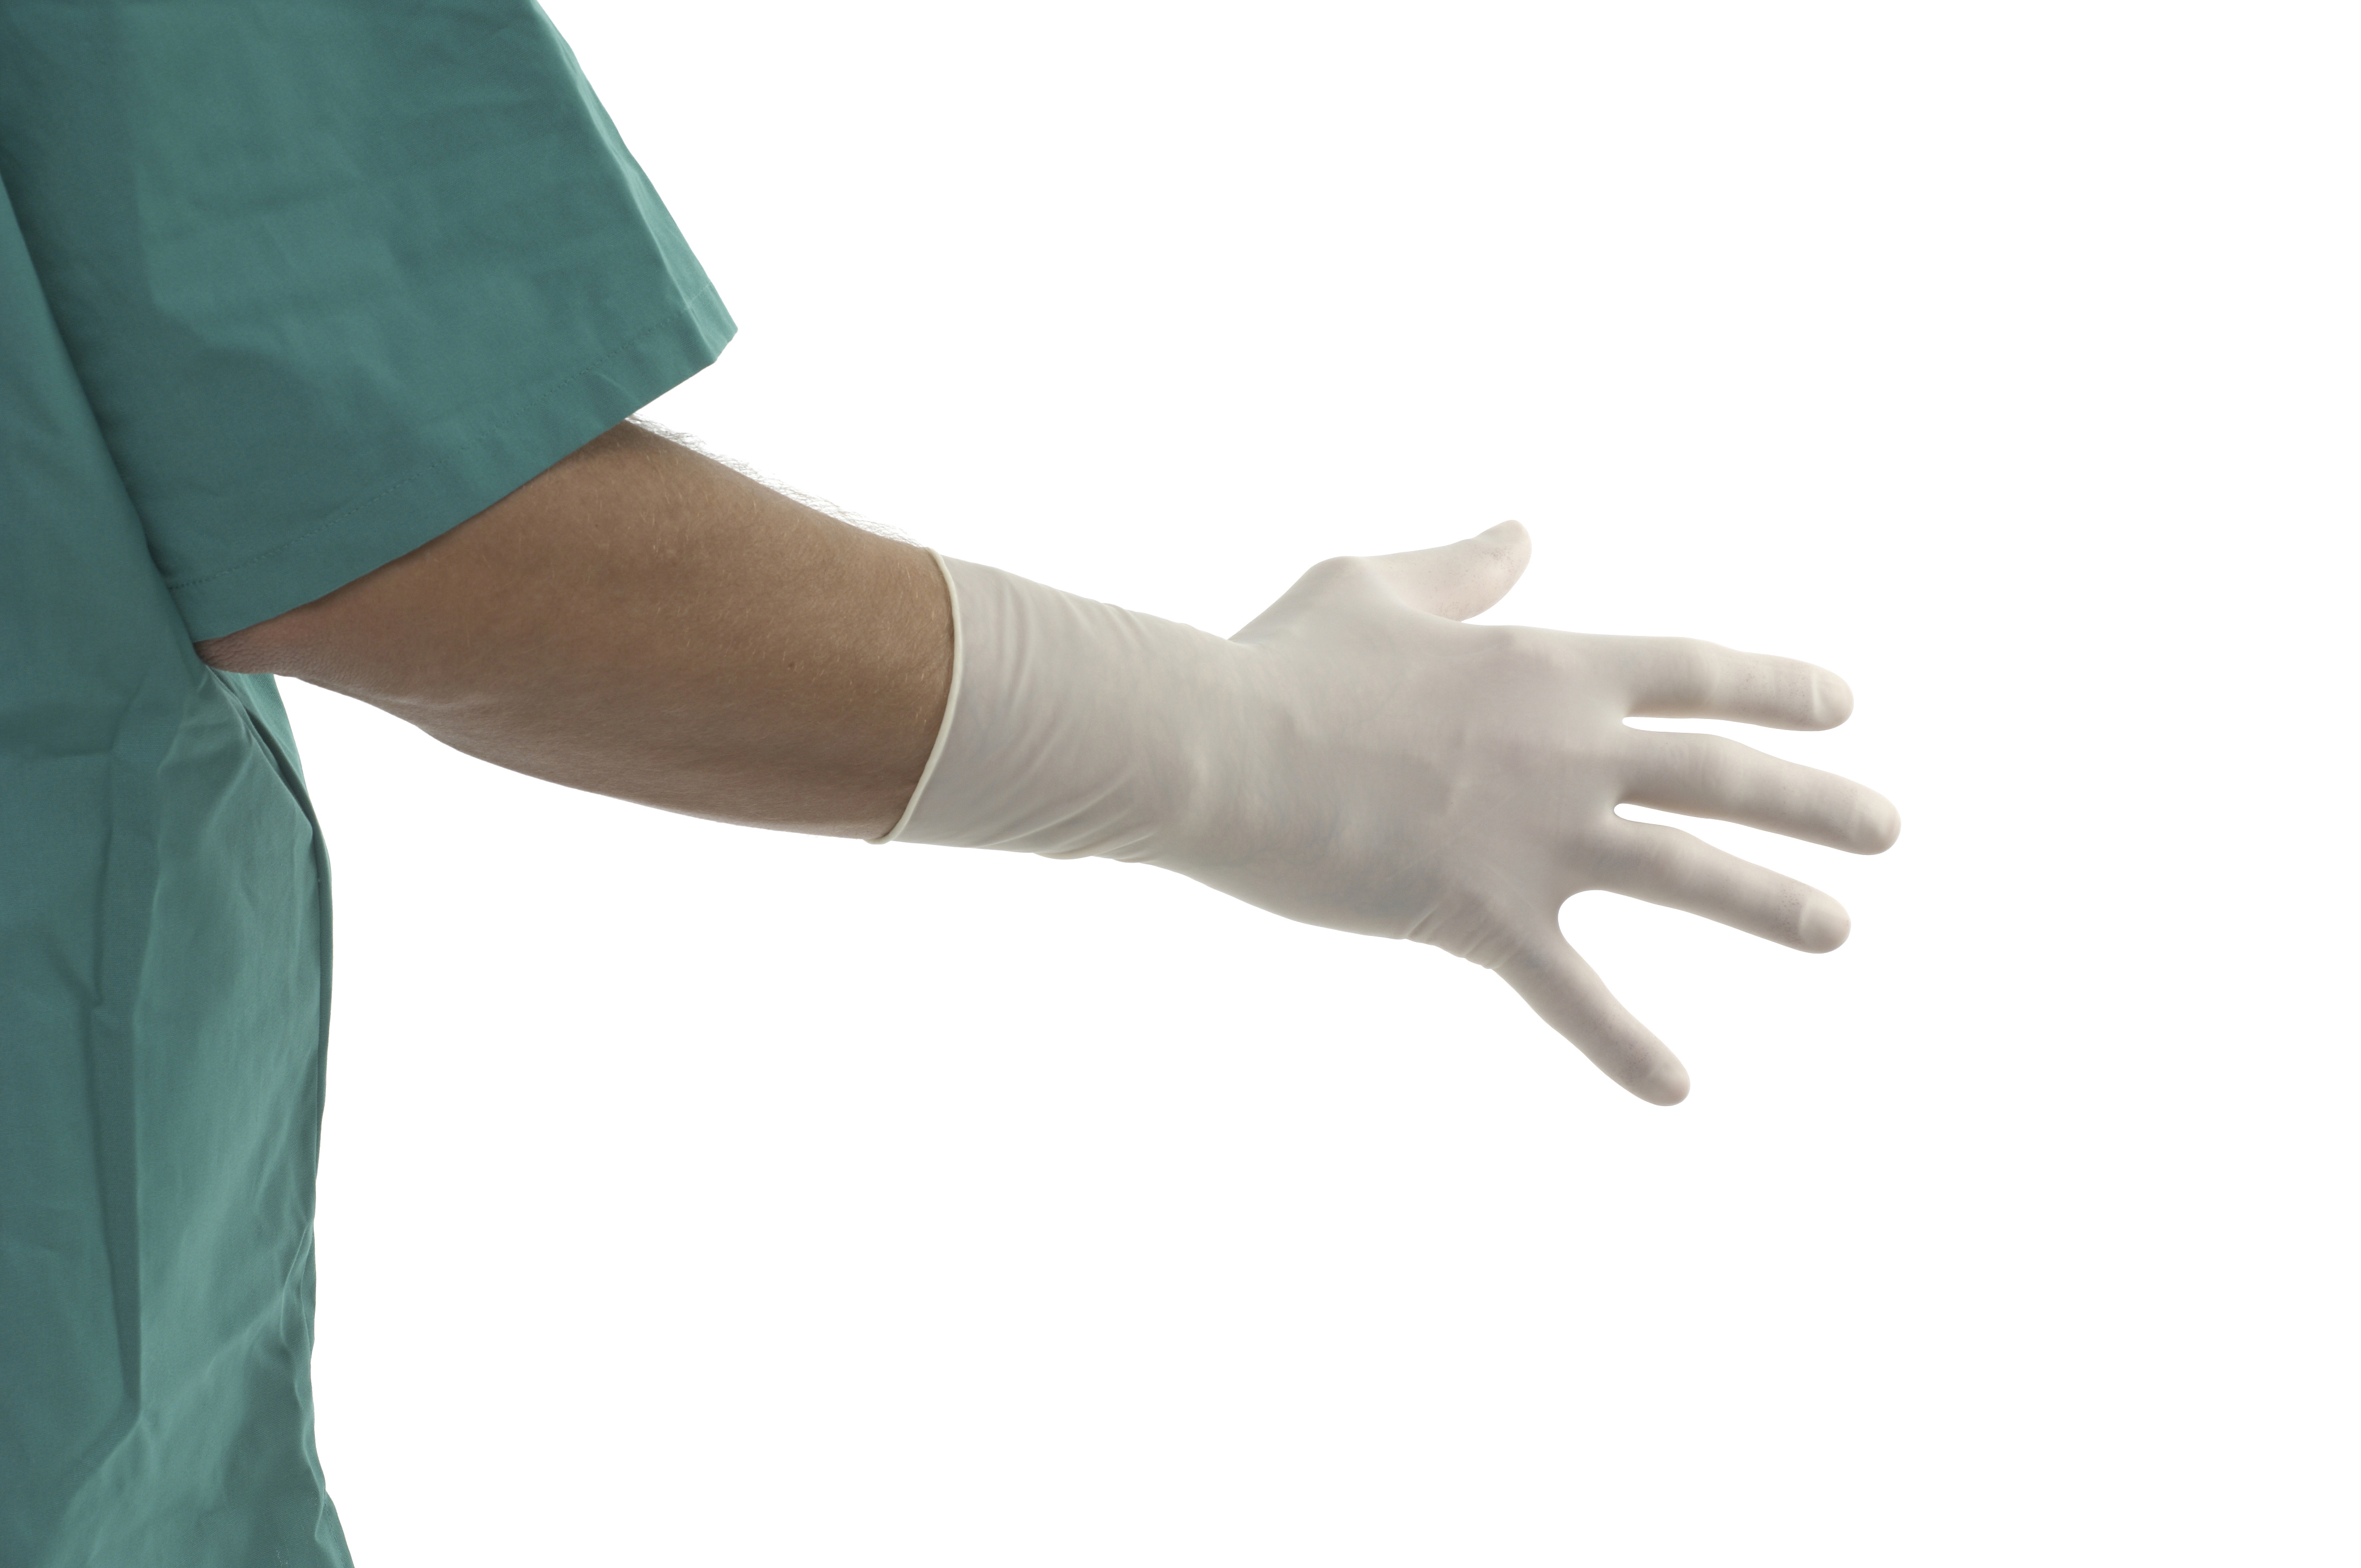 US-KRUTEX Polyisoprene surgical gloves, size 8.5, 25/pk